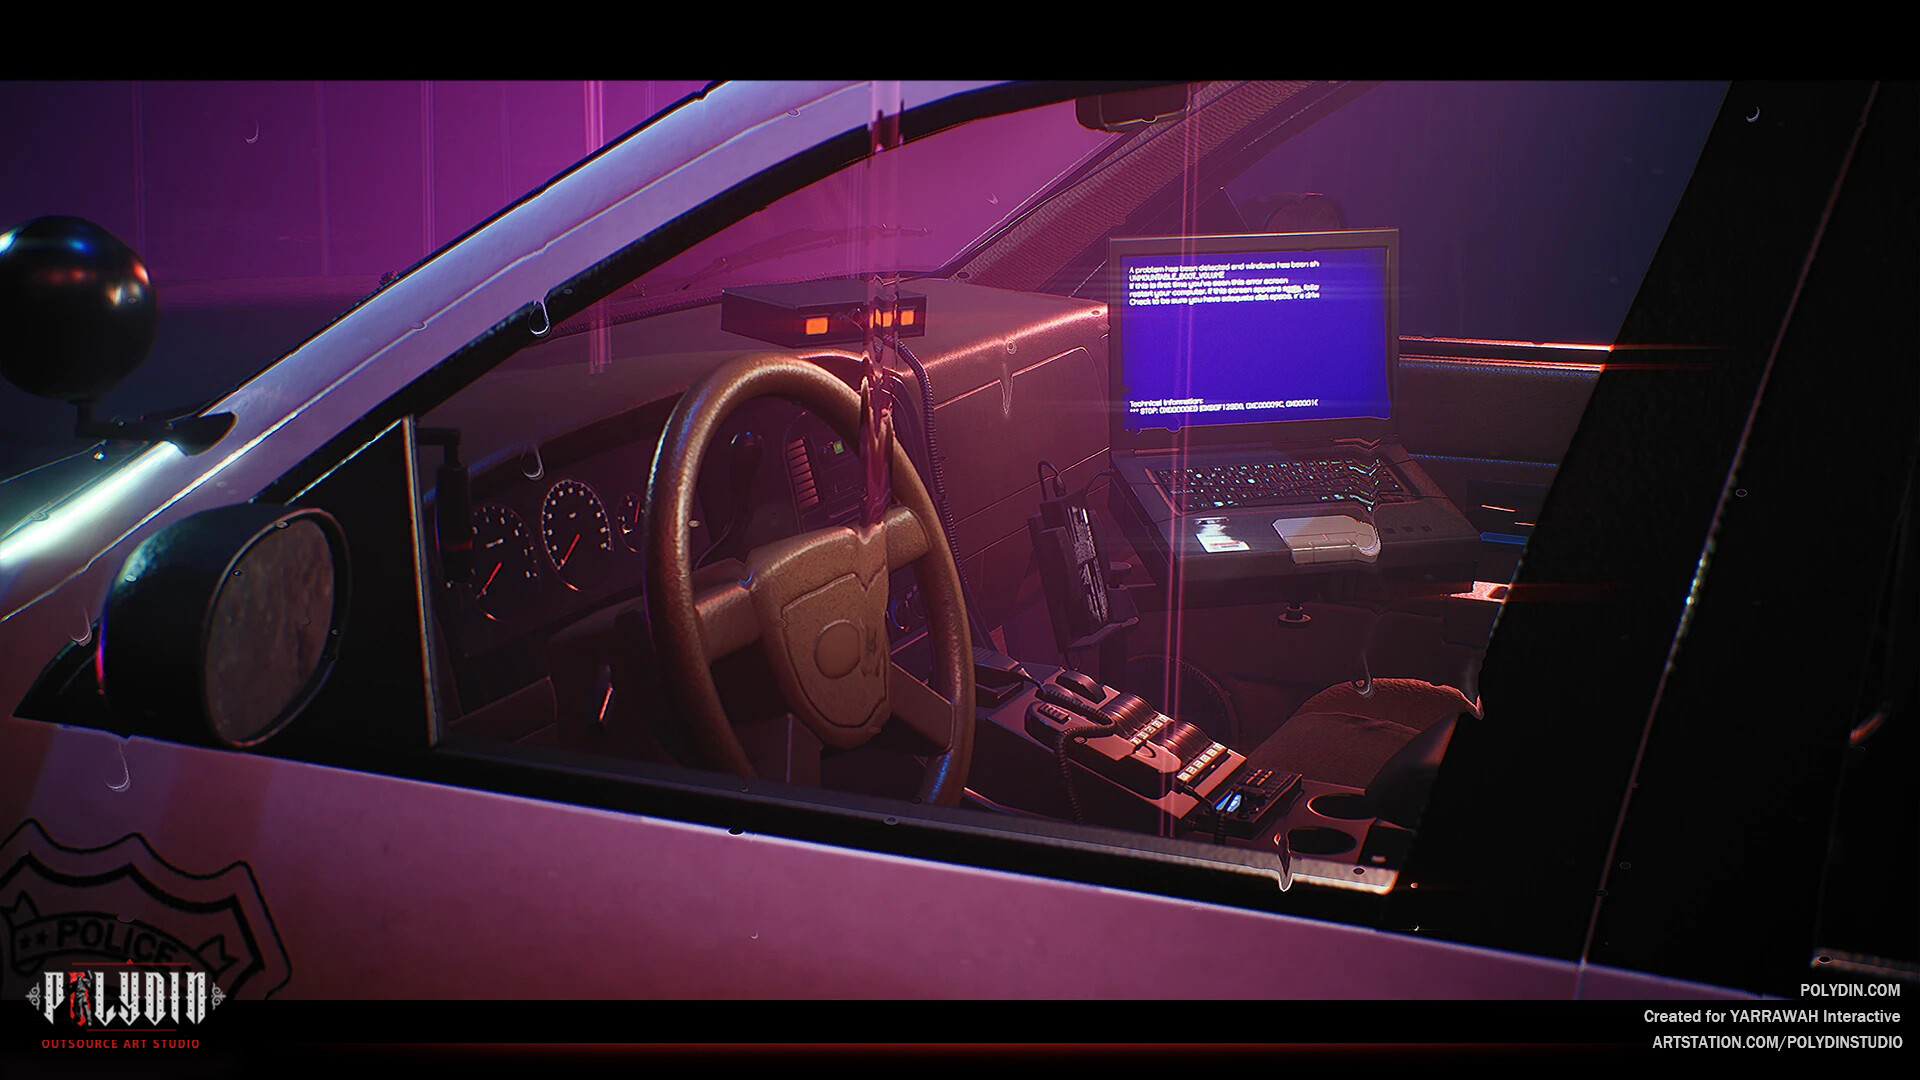 police car computer screen